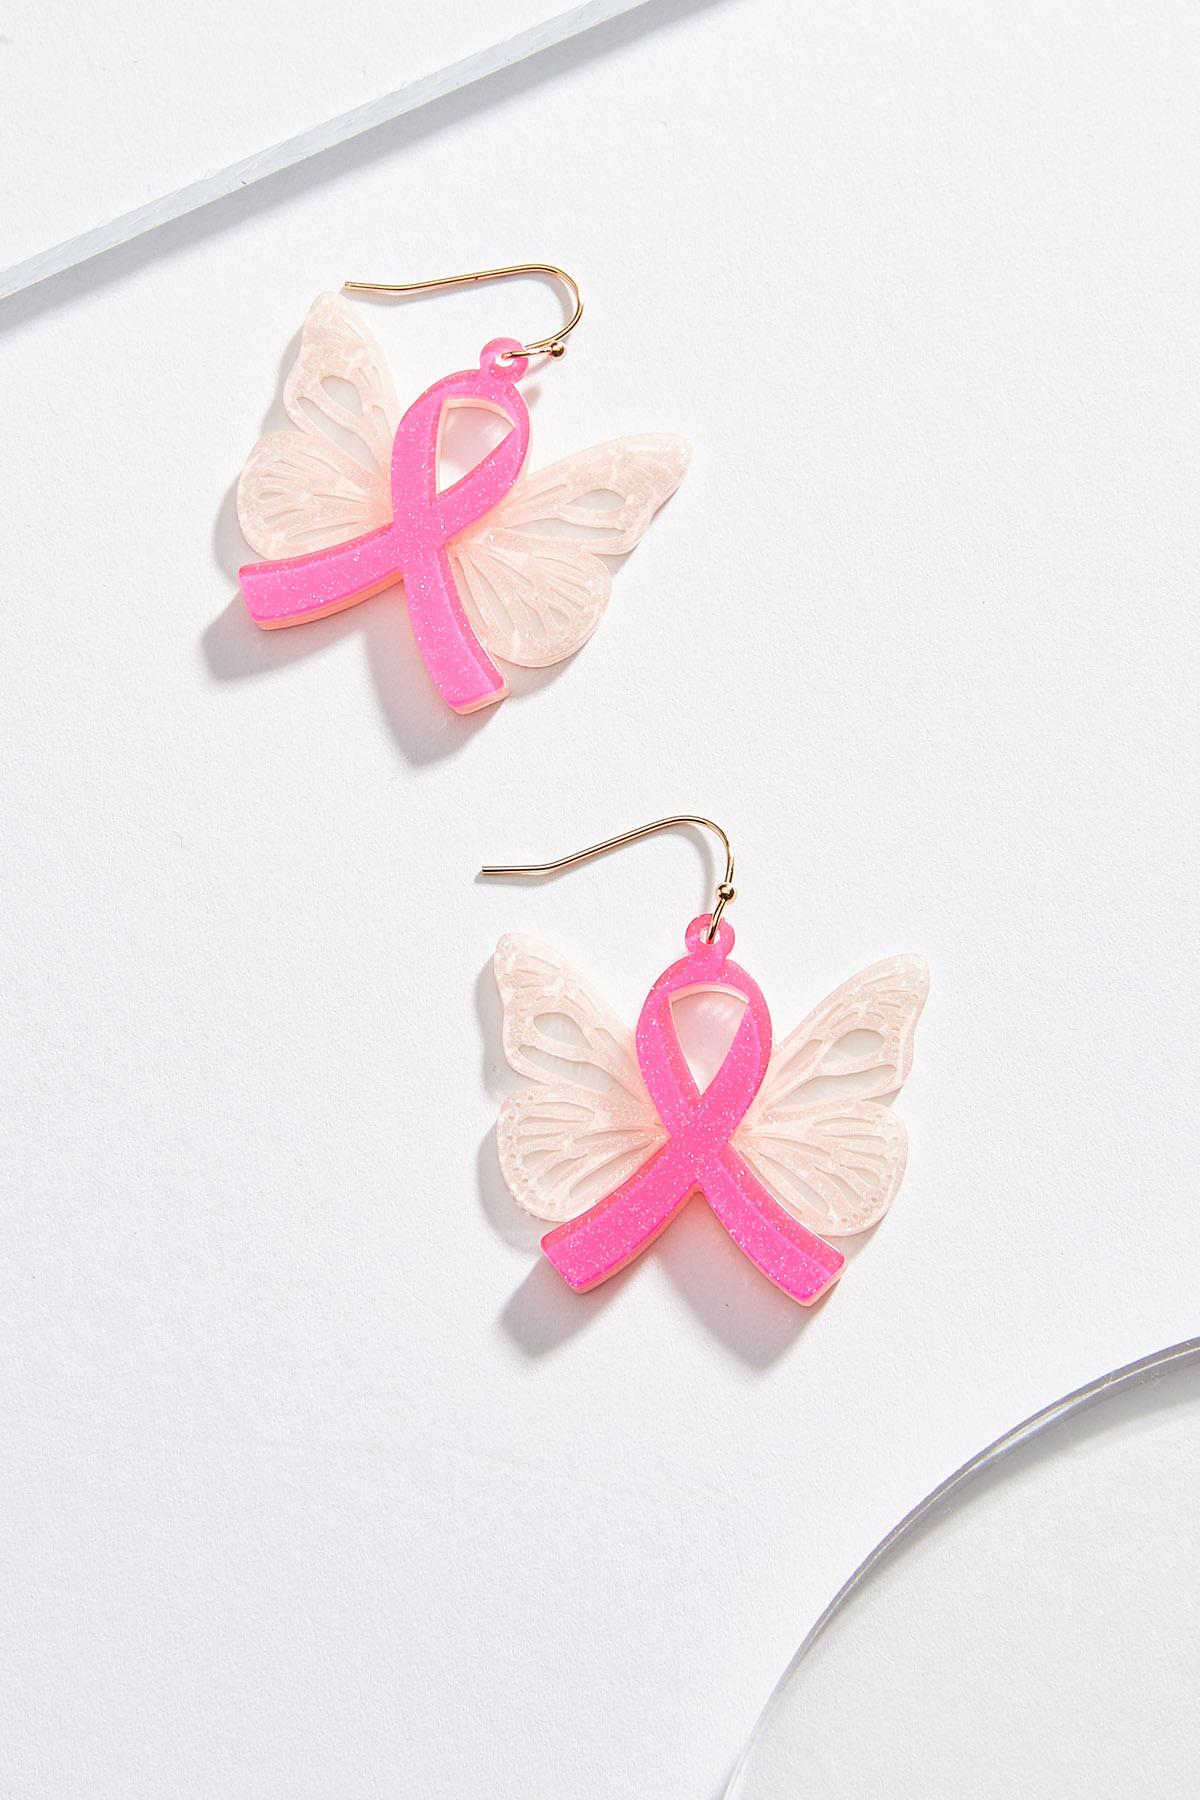 Awareness Ribbon Butterfly Earrings